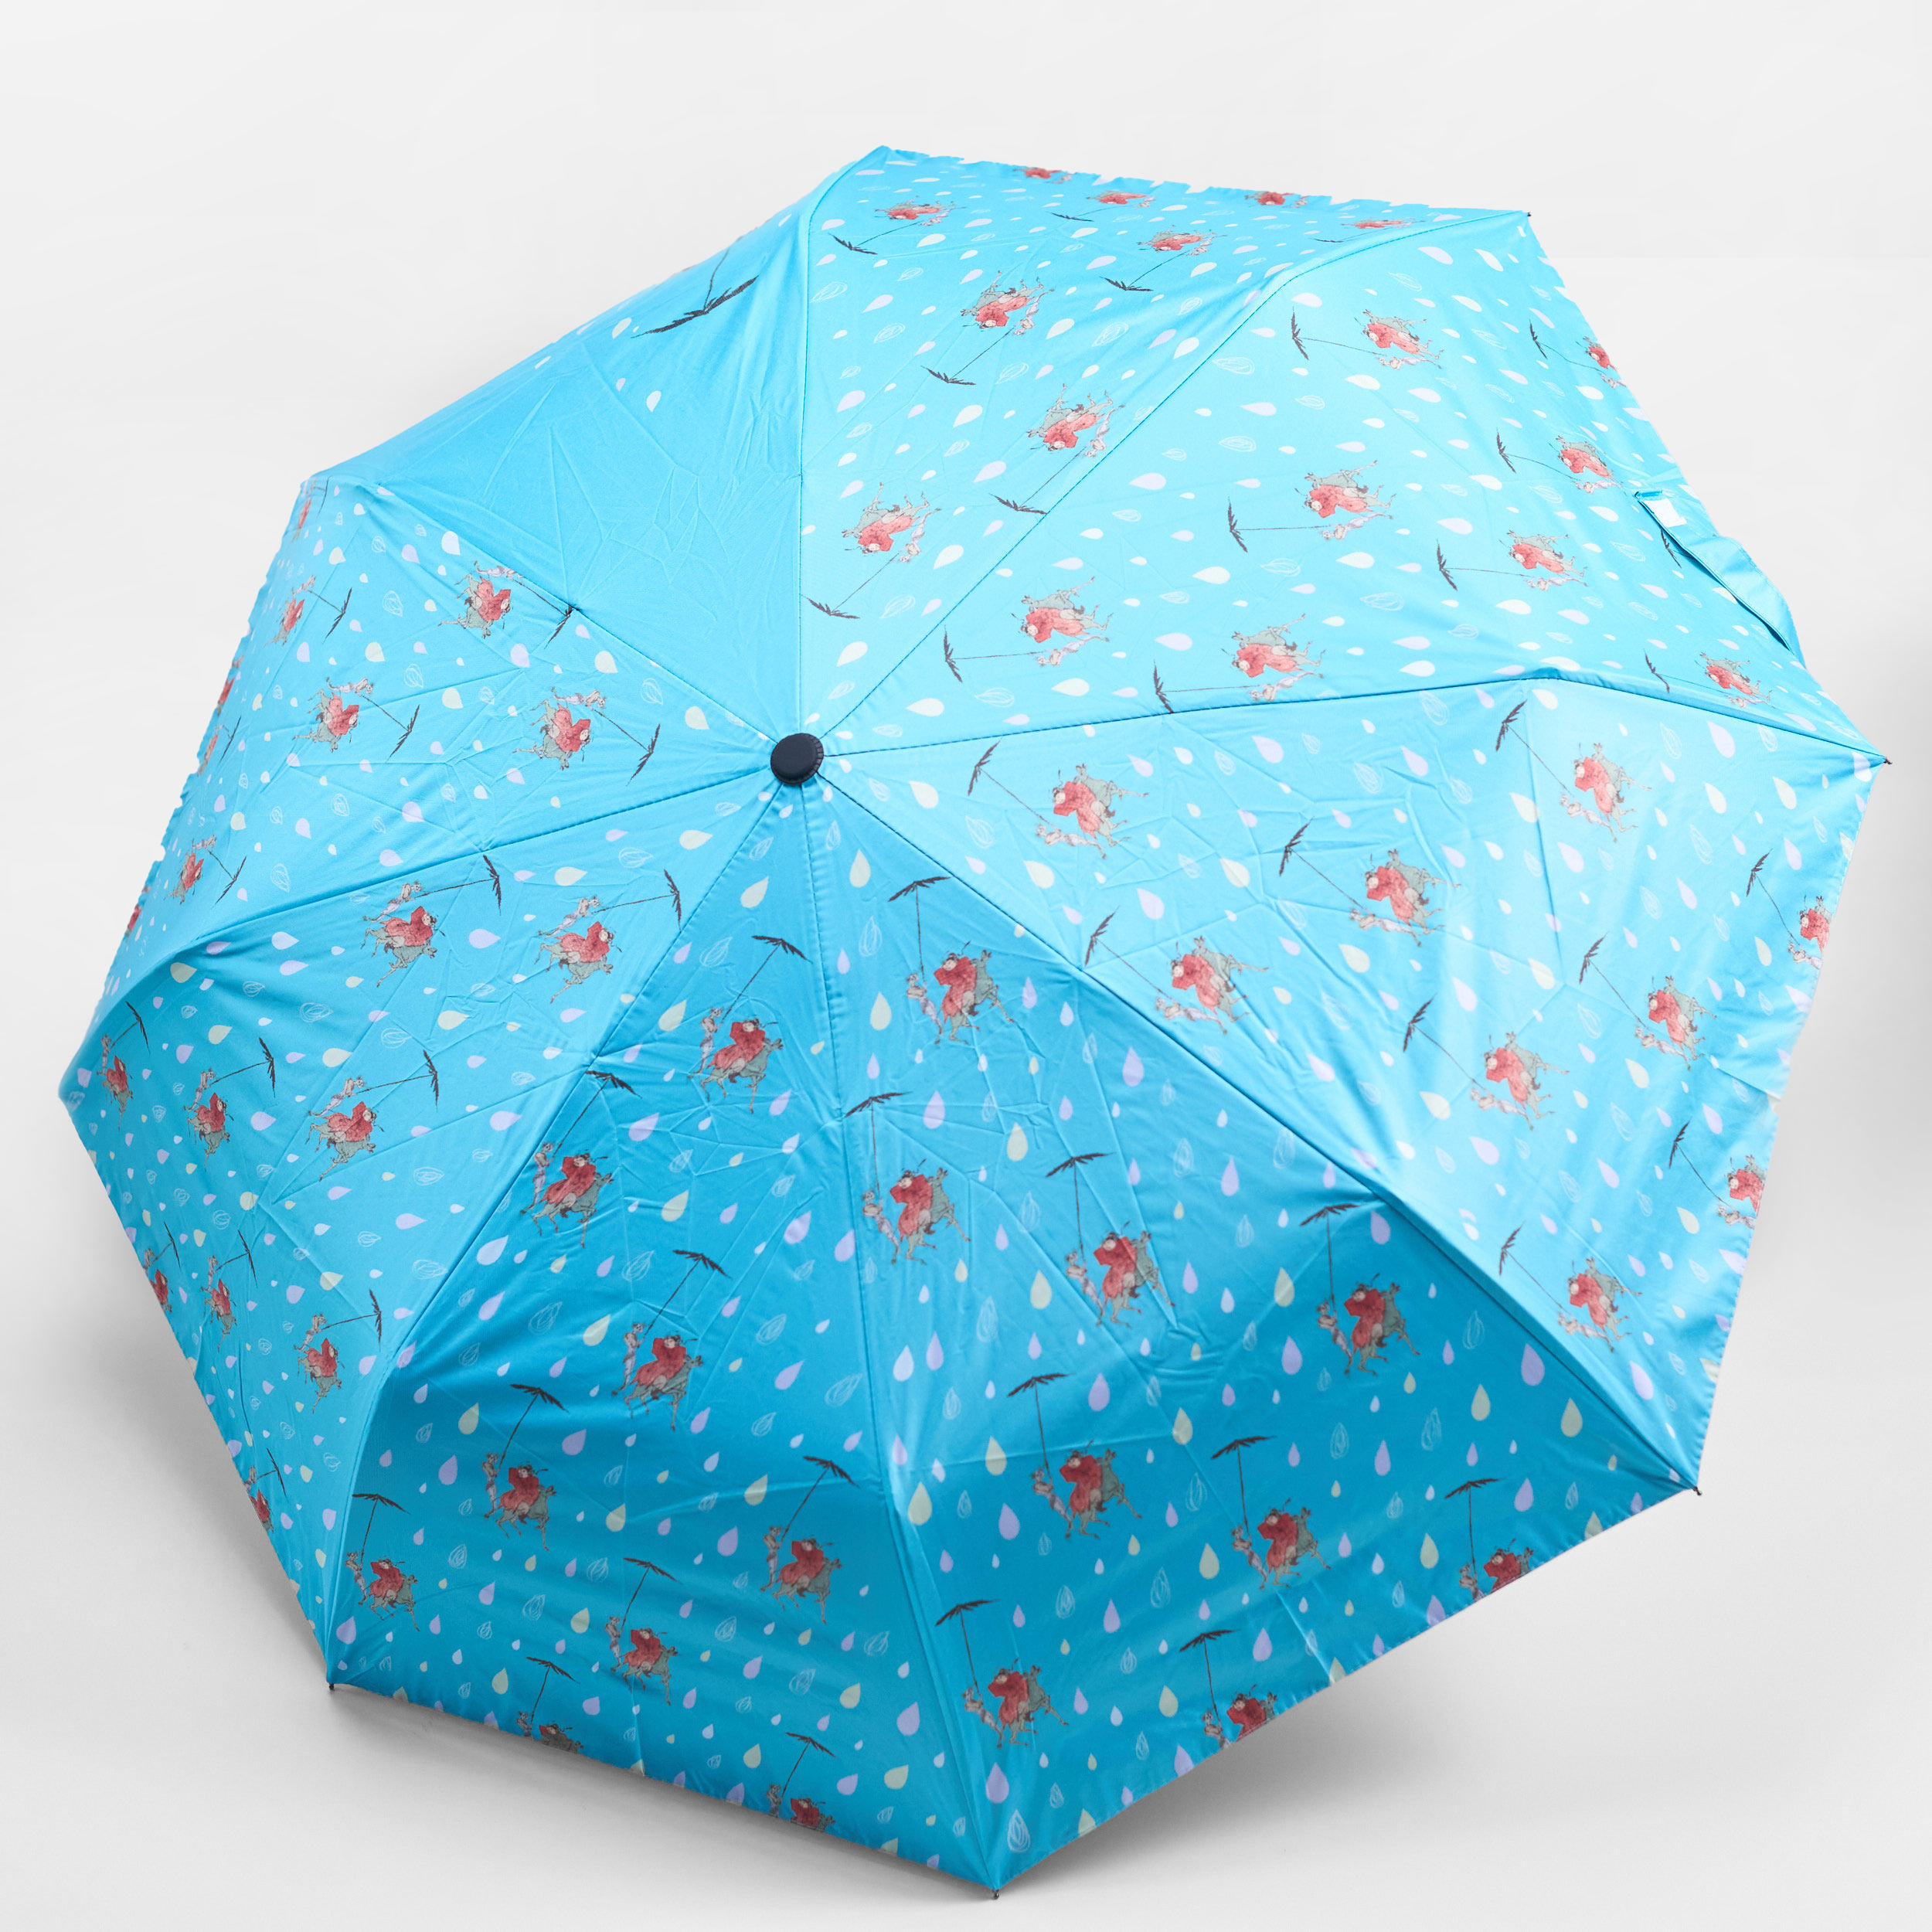 史博紋樣晴雨傘—下雨天